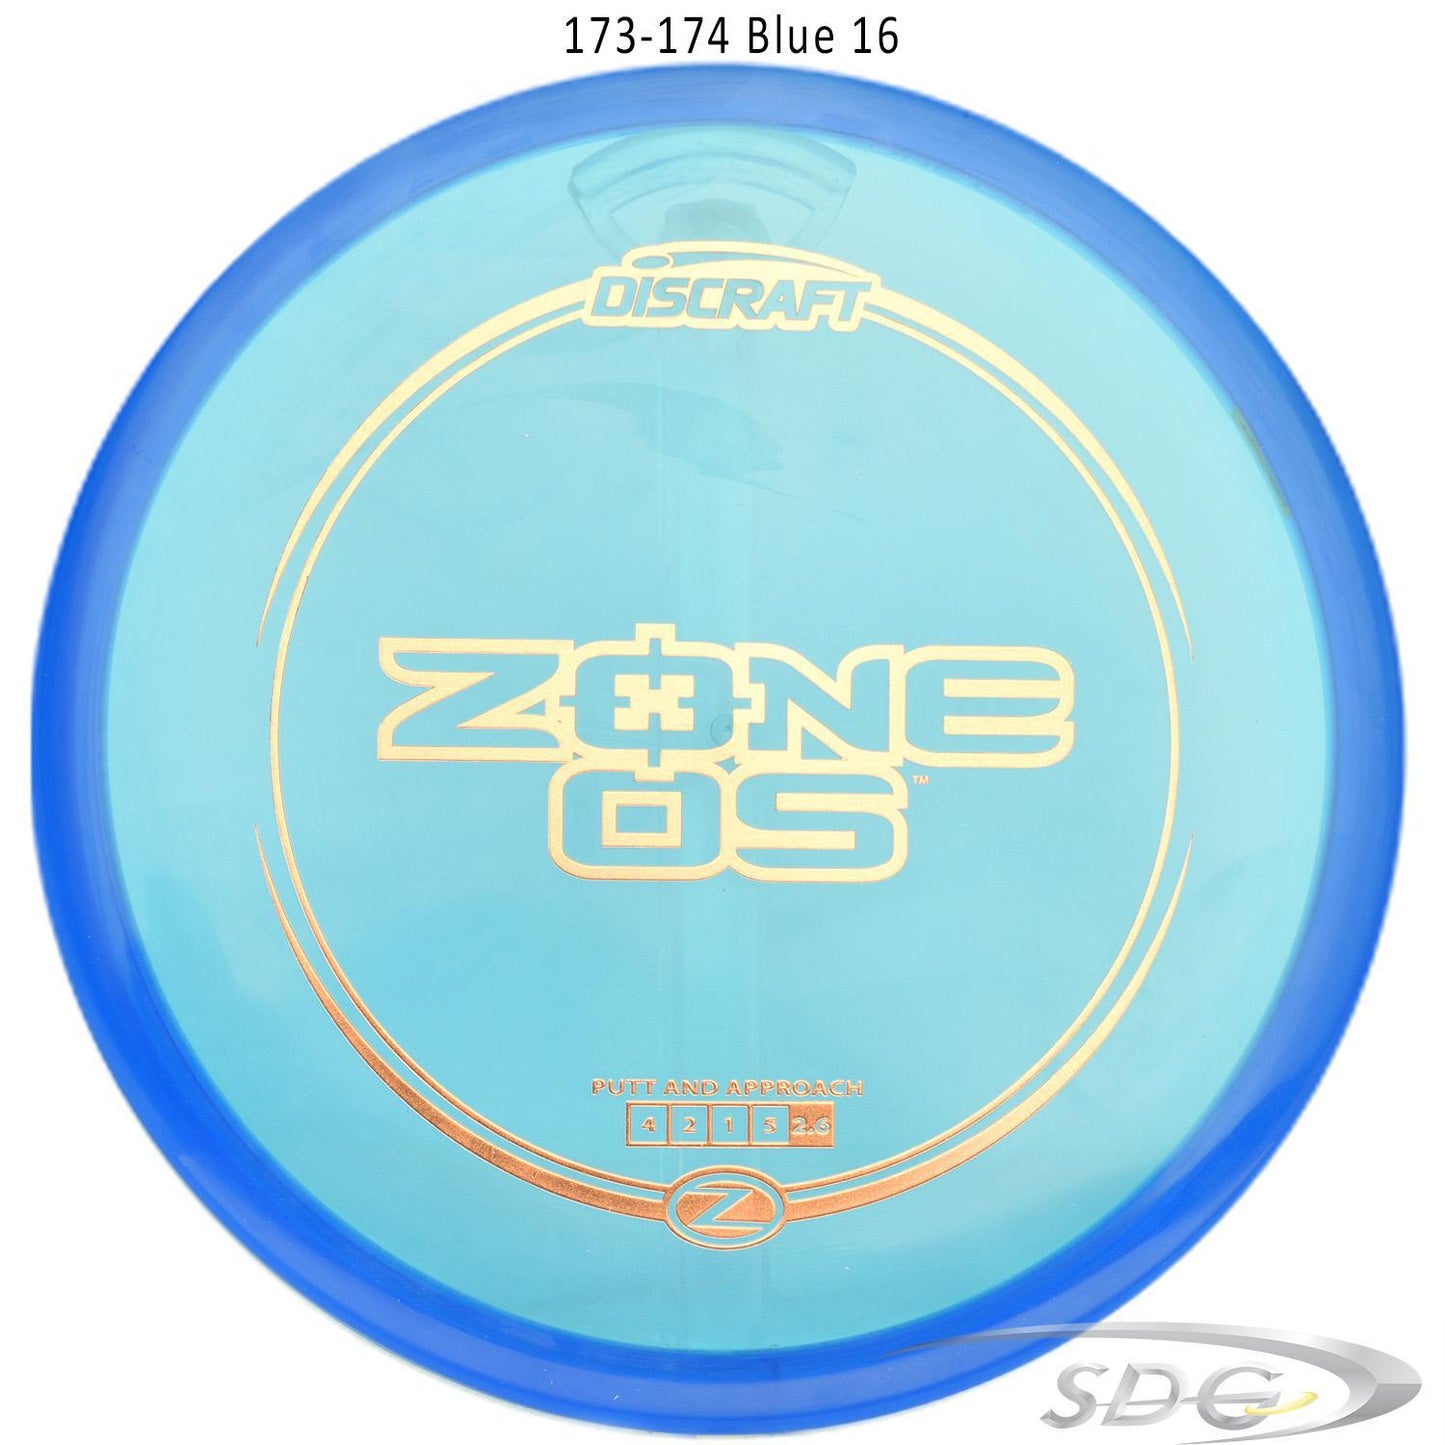 discraft-z-line-zone-os-disc-golf-putter-176-173-weights-1 173-174 Blue 16 